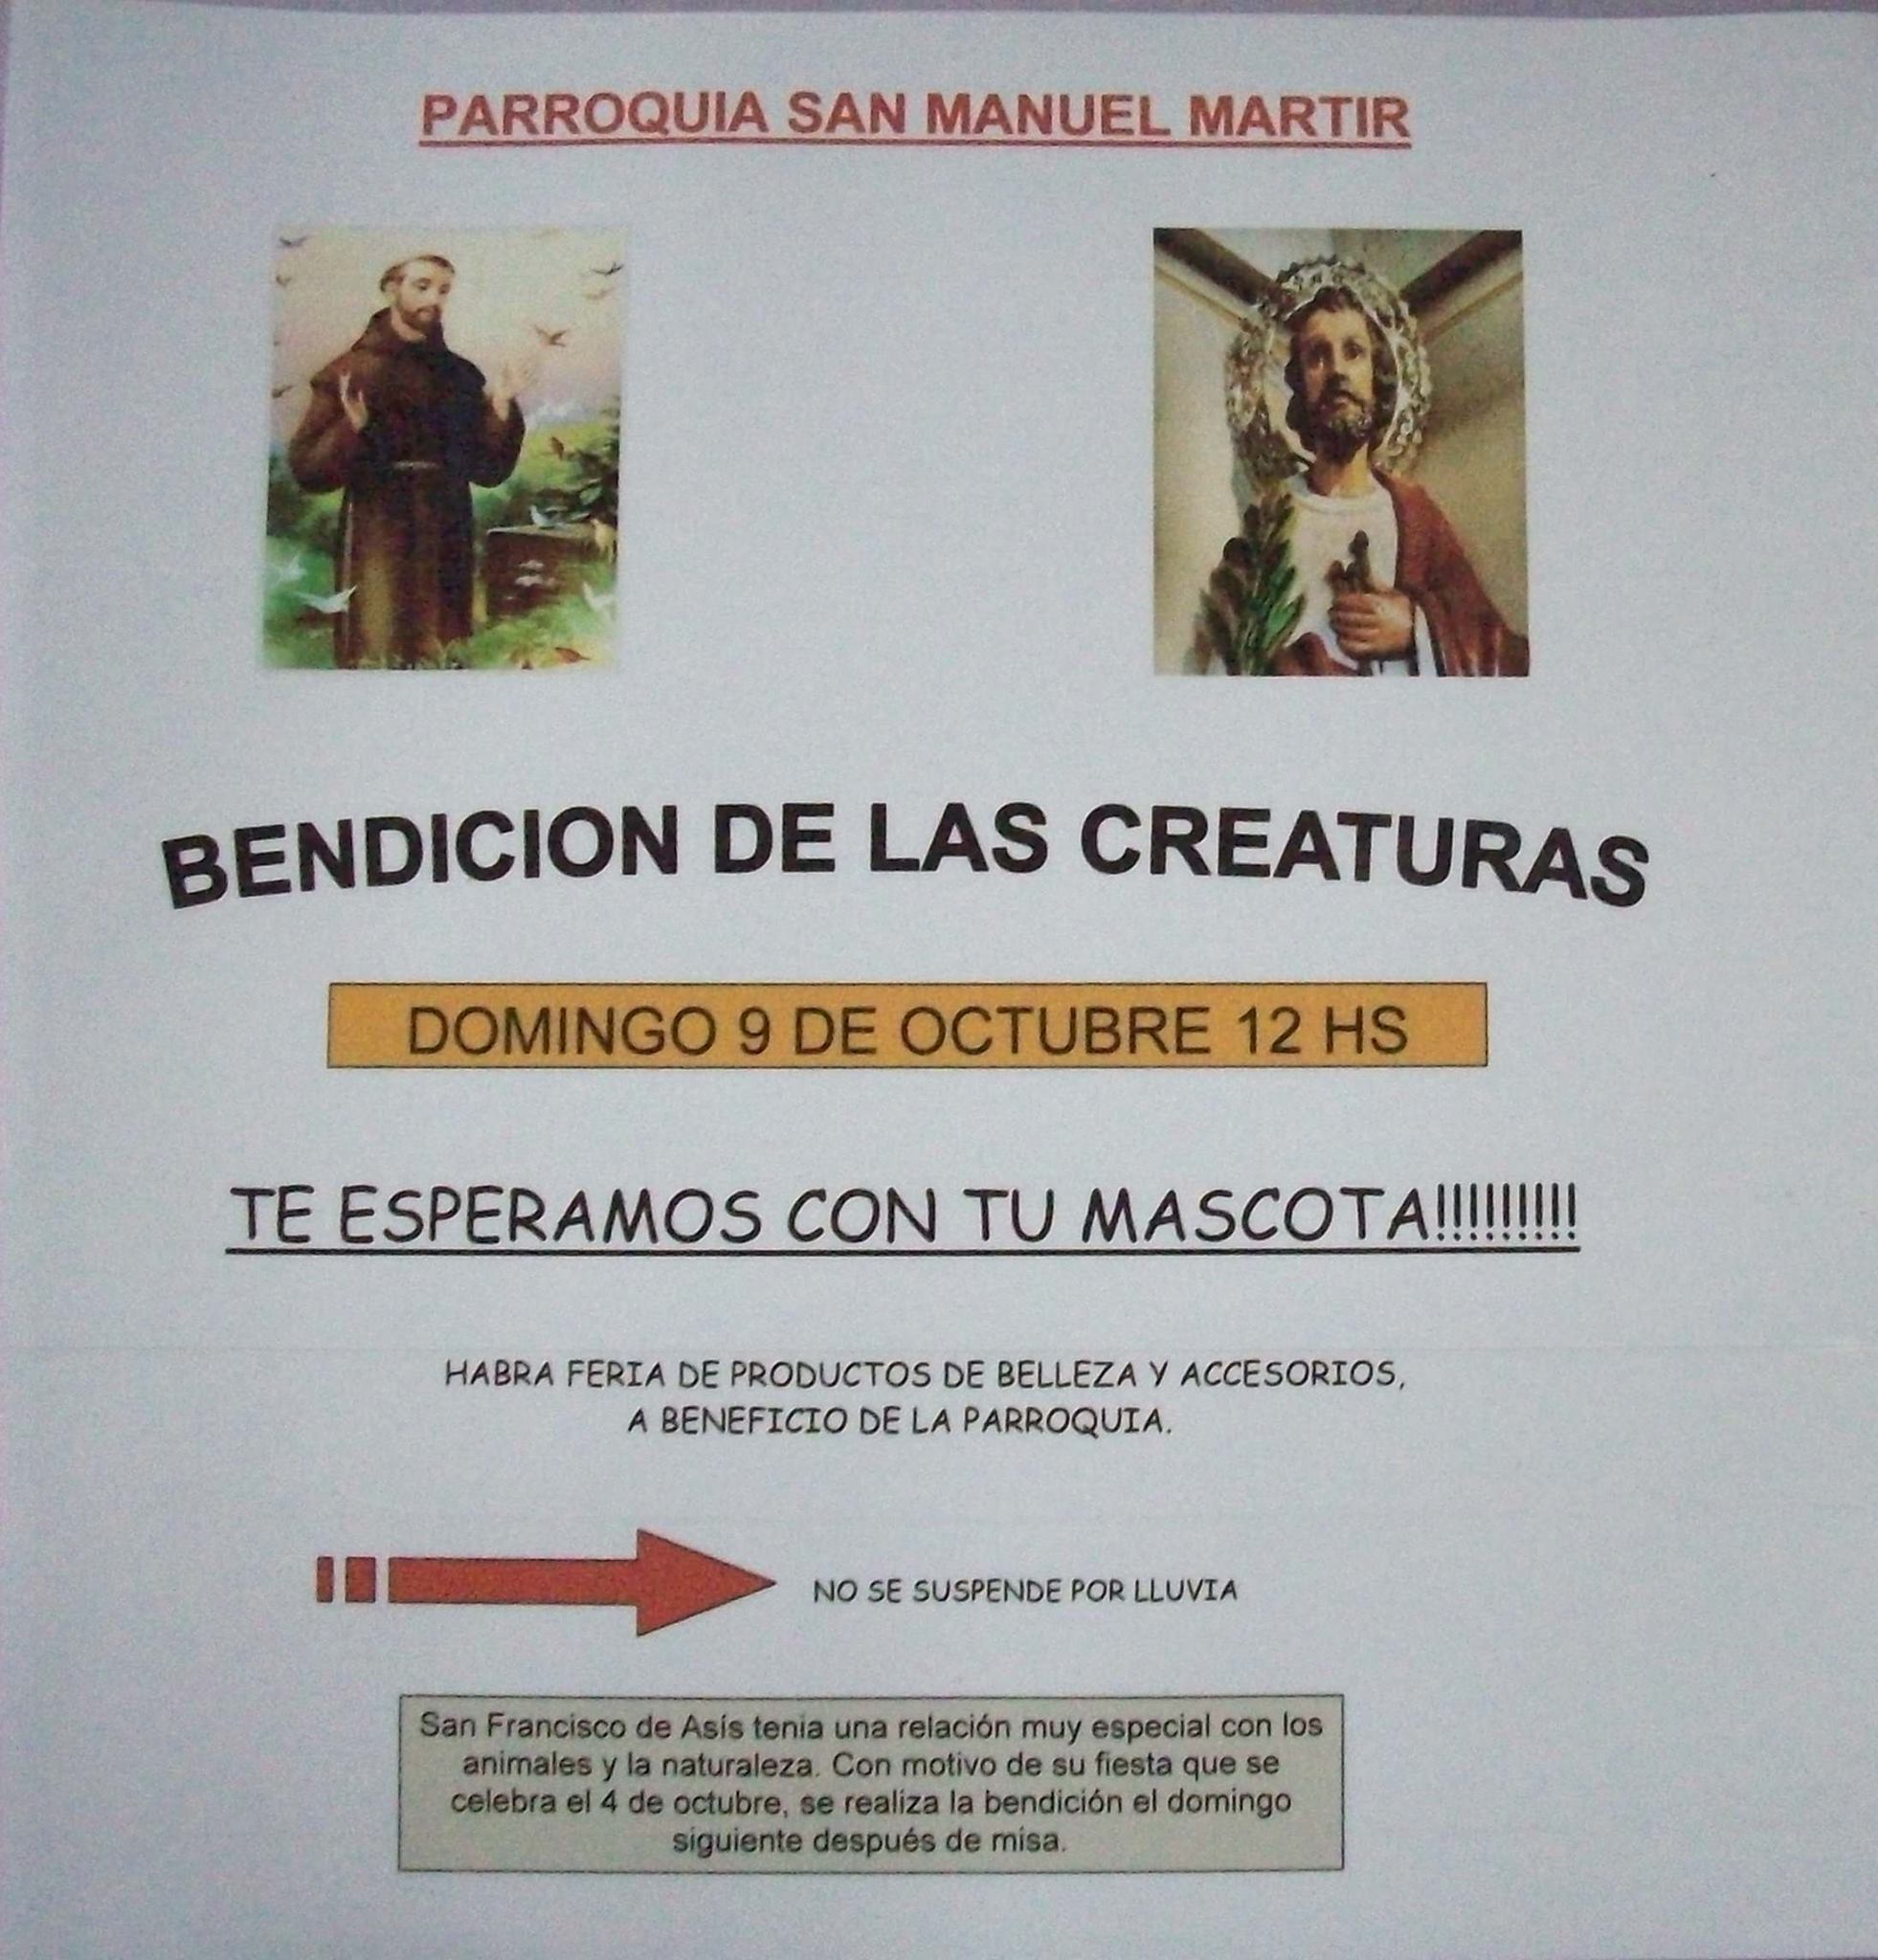 Domingo 9 de octubre a las 12 hs : Bendición de las creaturas en Pilar